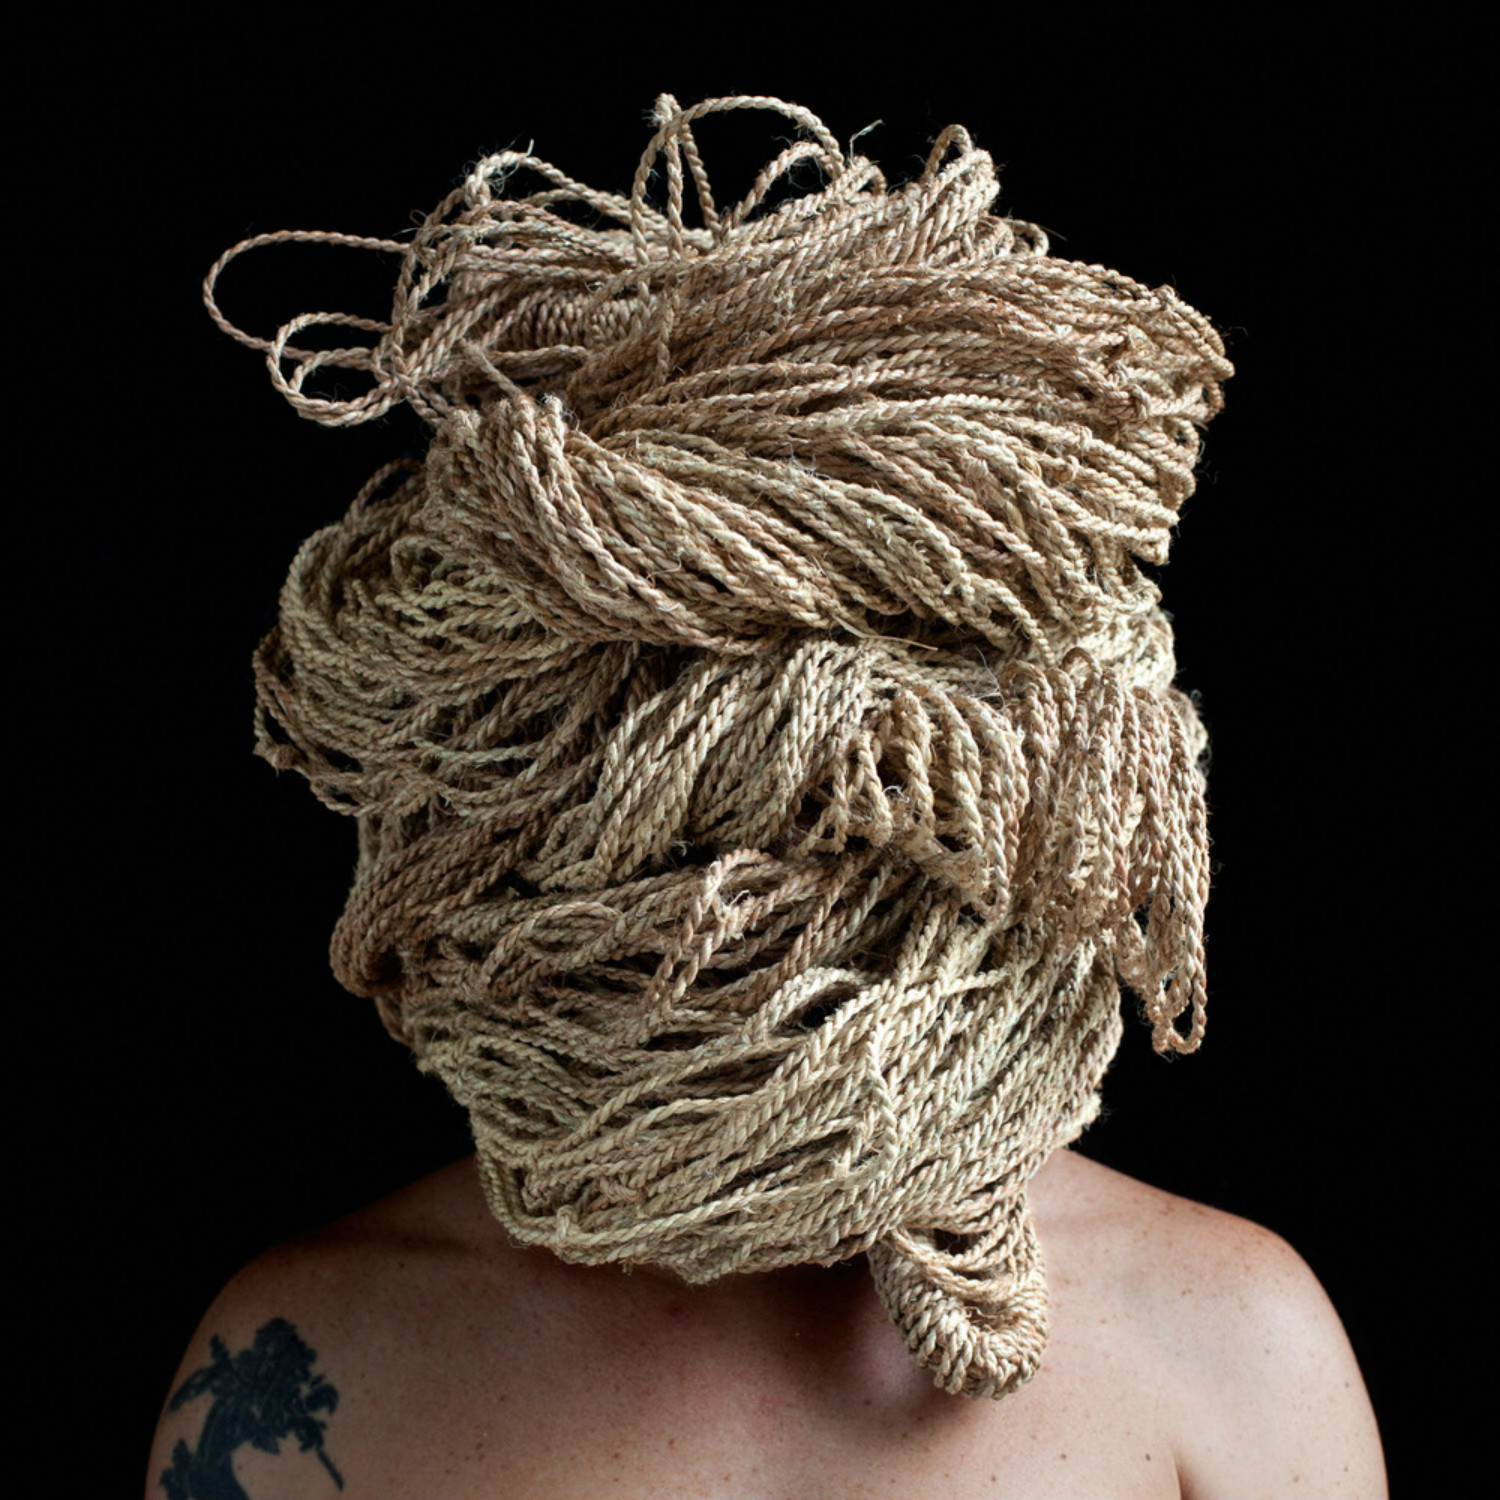 edu monteiro photography portrait gross junk body string